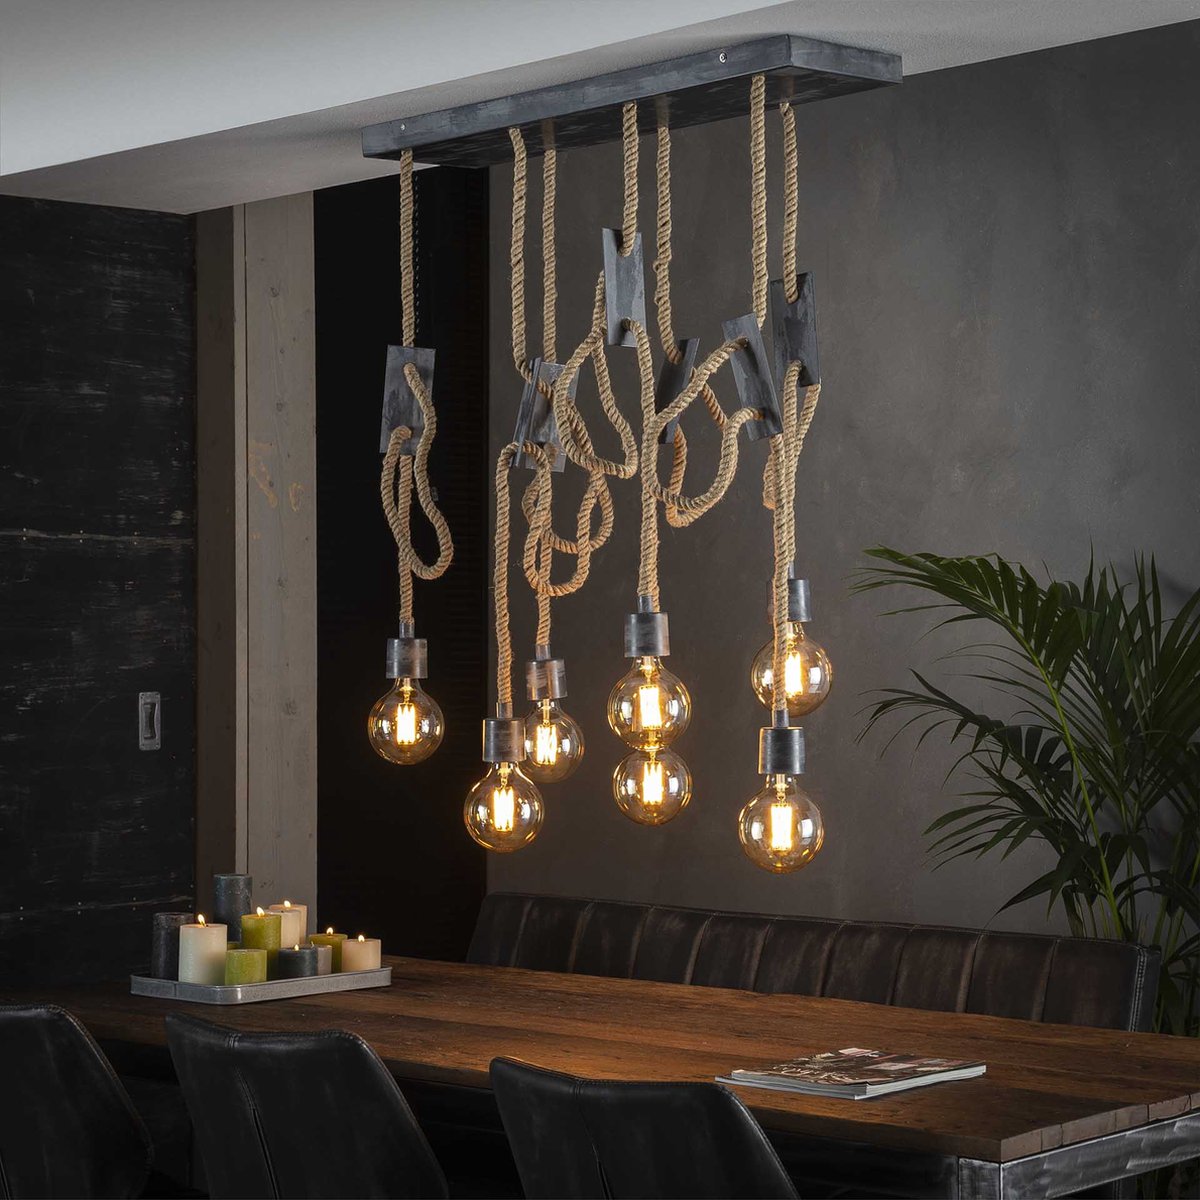 Hanglamp touw 3+4 | 7 lichts | bruin / grijs | touw / metaal | in hoogte verstelbaar tot 150 cm | 87 cm breed | eetkamer / eettafel lamp | modern / sfeervol design